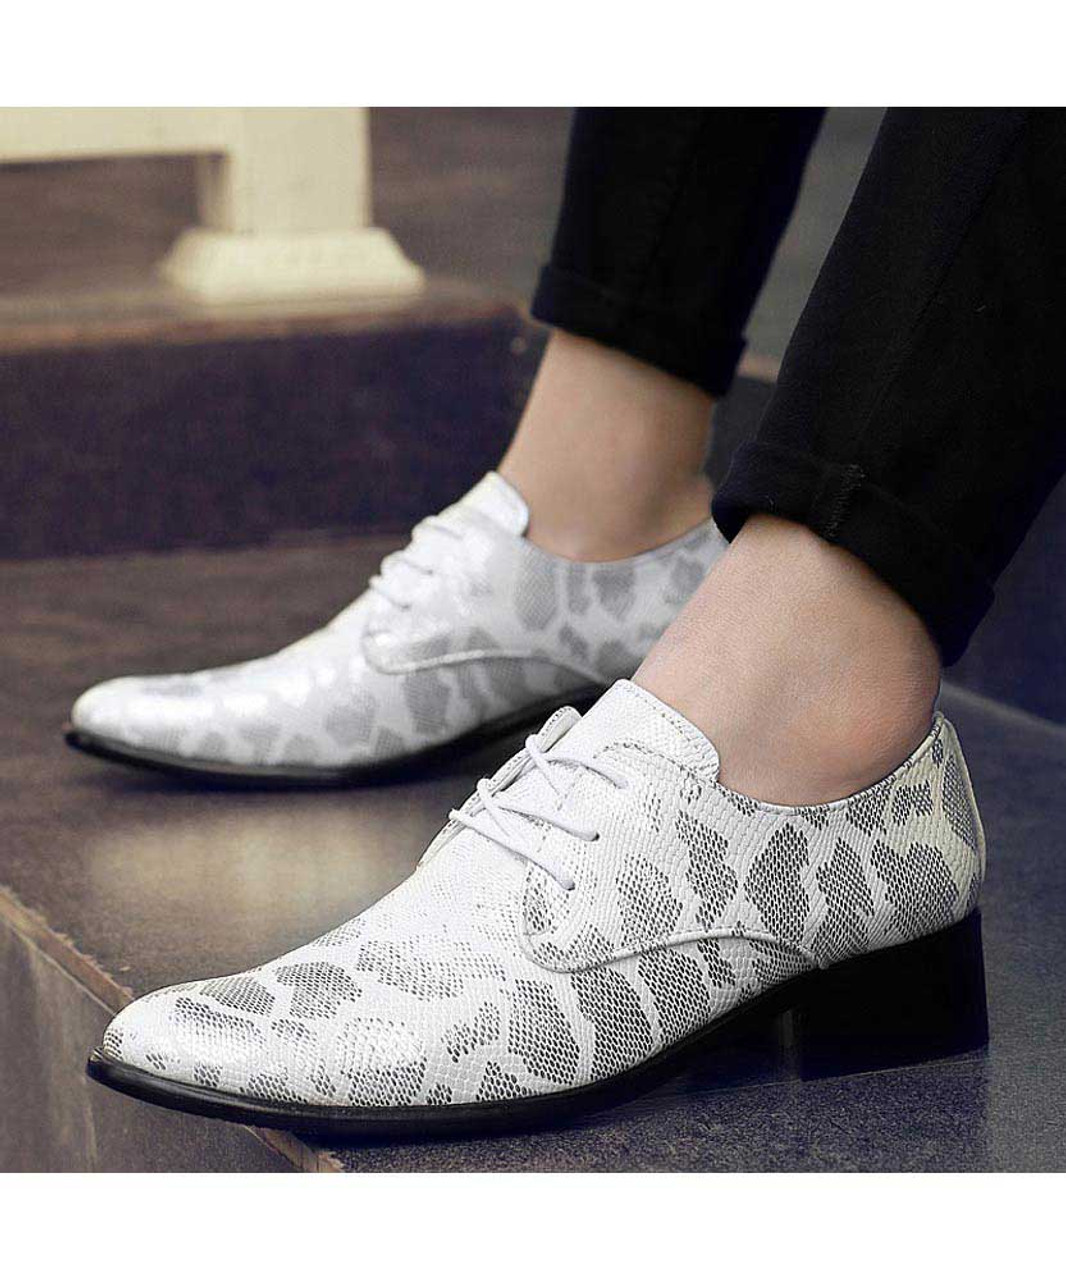 Silver snake skin pattern derby dress shoe | Mens dress shoes online 1585MS